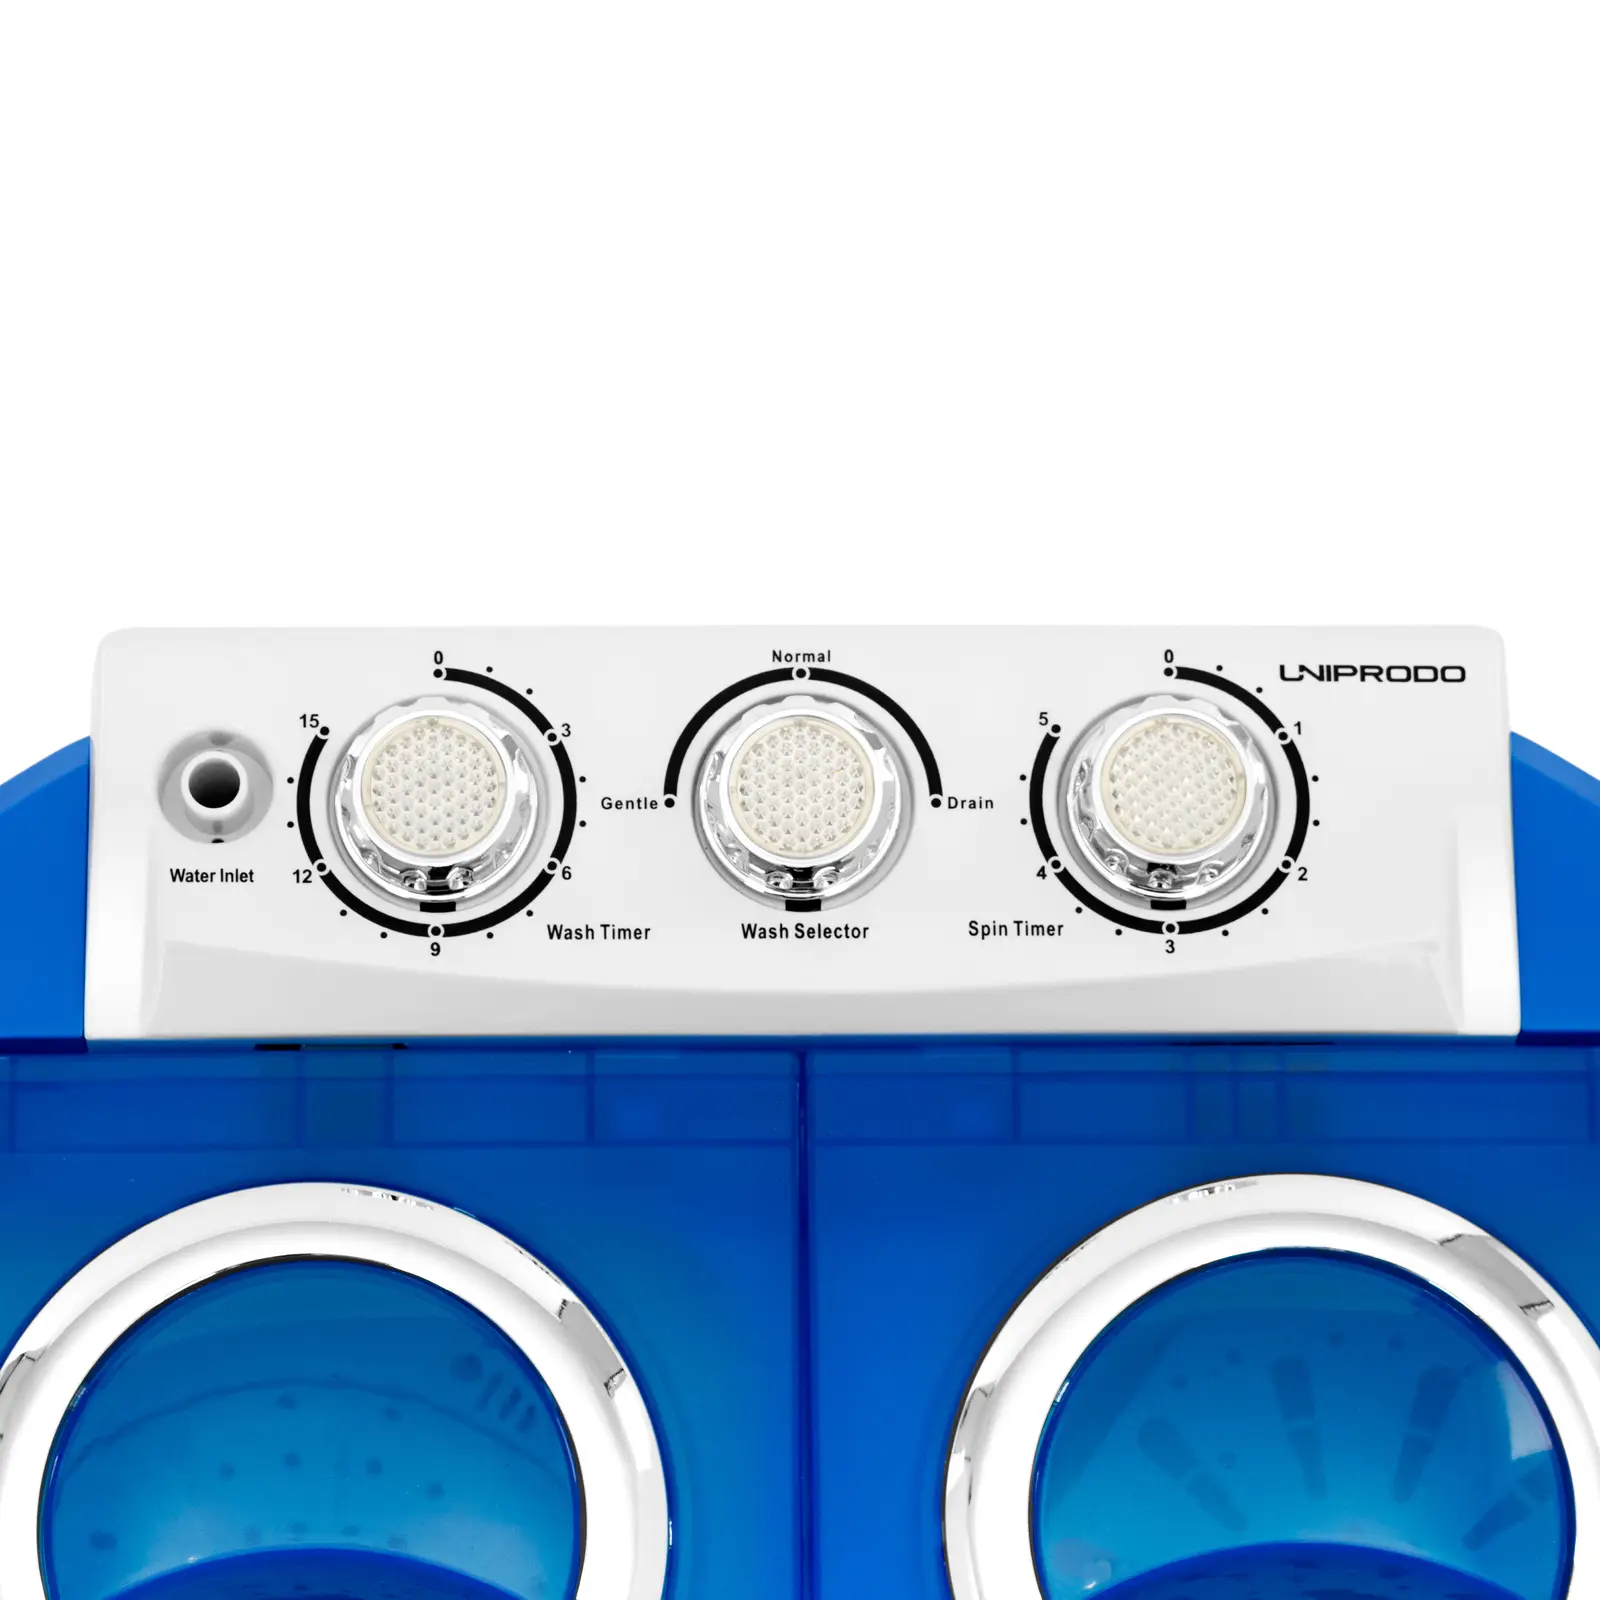 Mini machine à laver - avec fonction essorage - 2 kg - 190/135 W